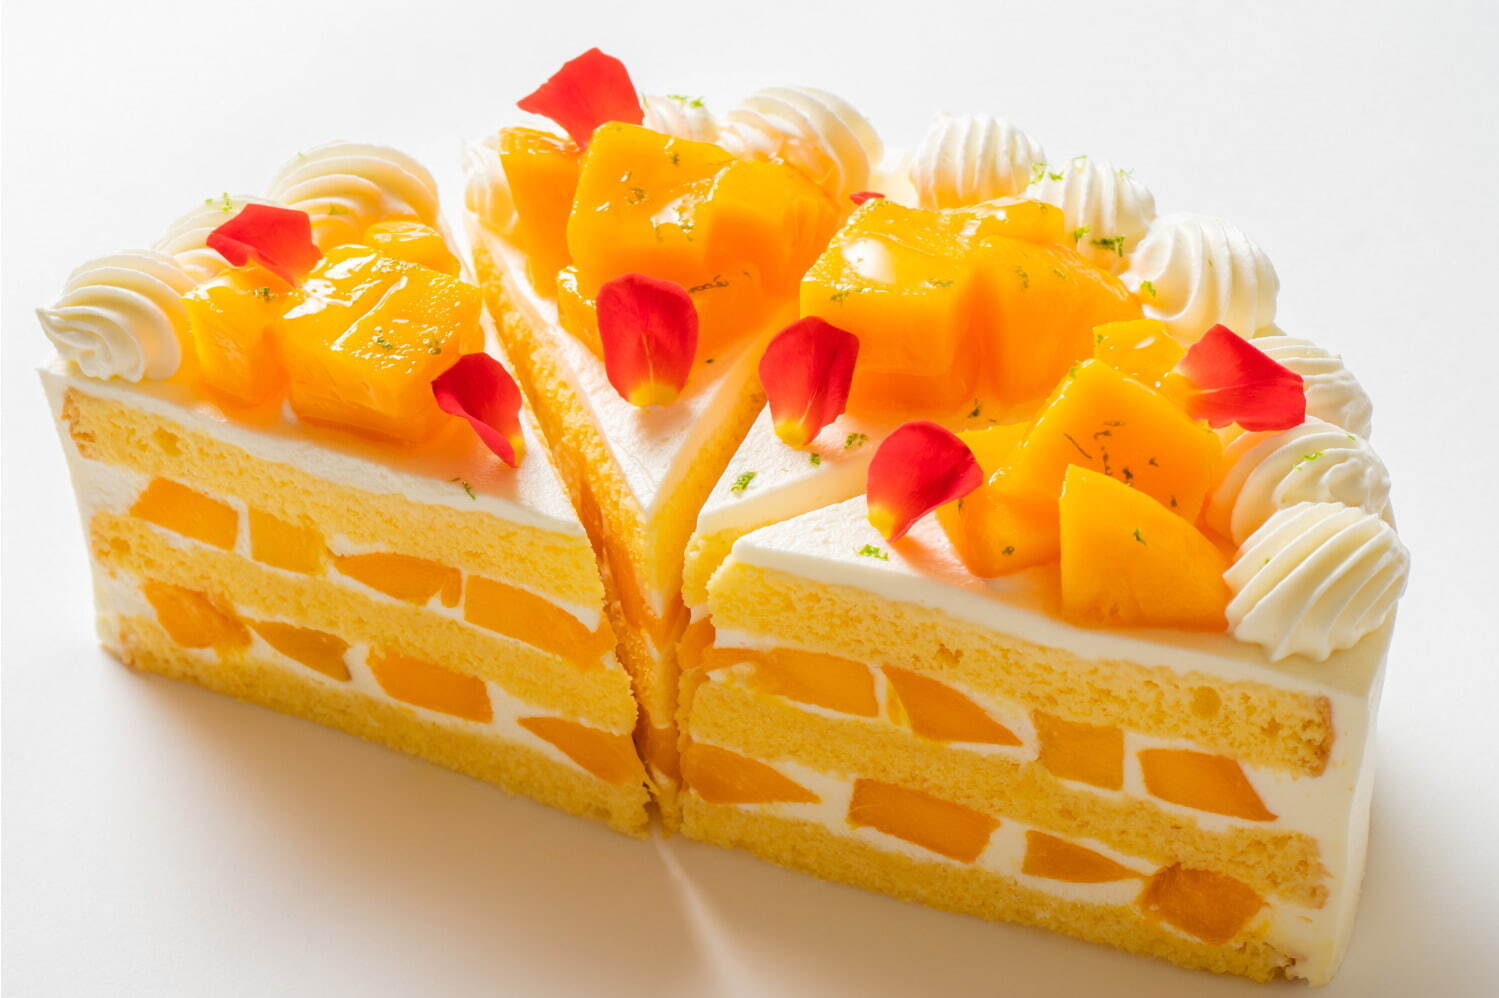 「極上マンゴーショートケーキ」ピースケーキ 1,500円(長さ9cm、高さ8cm)